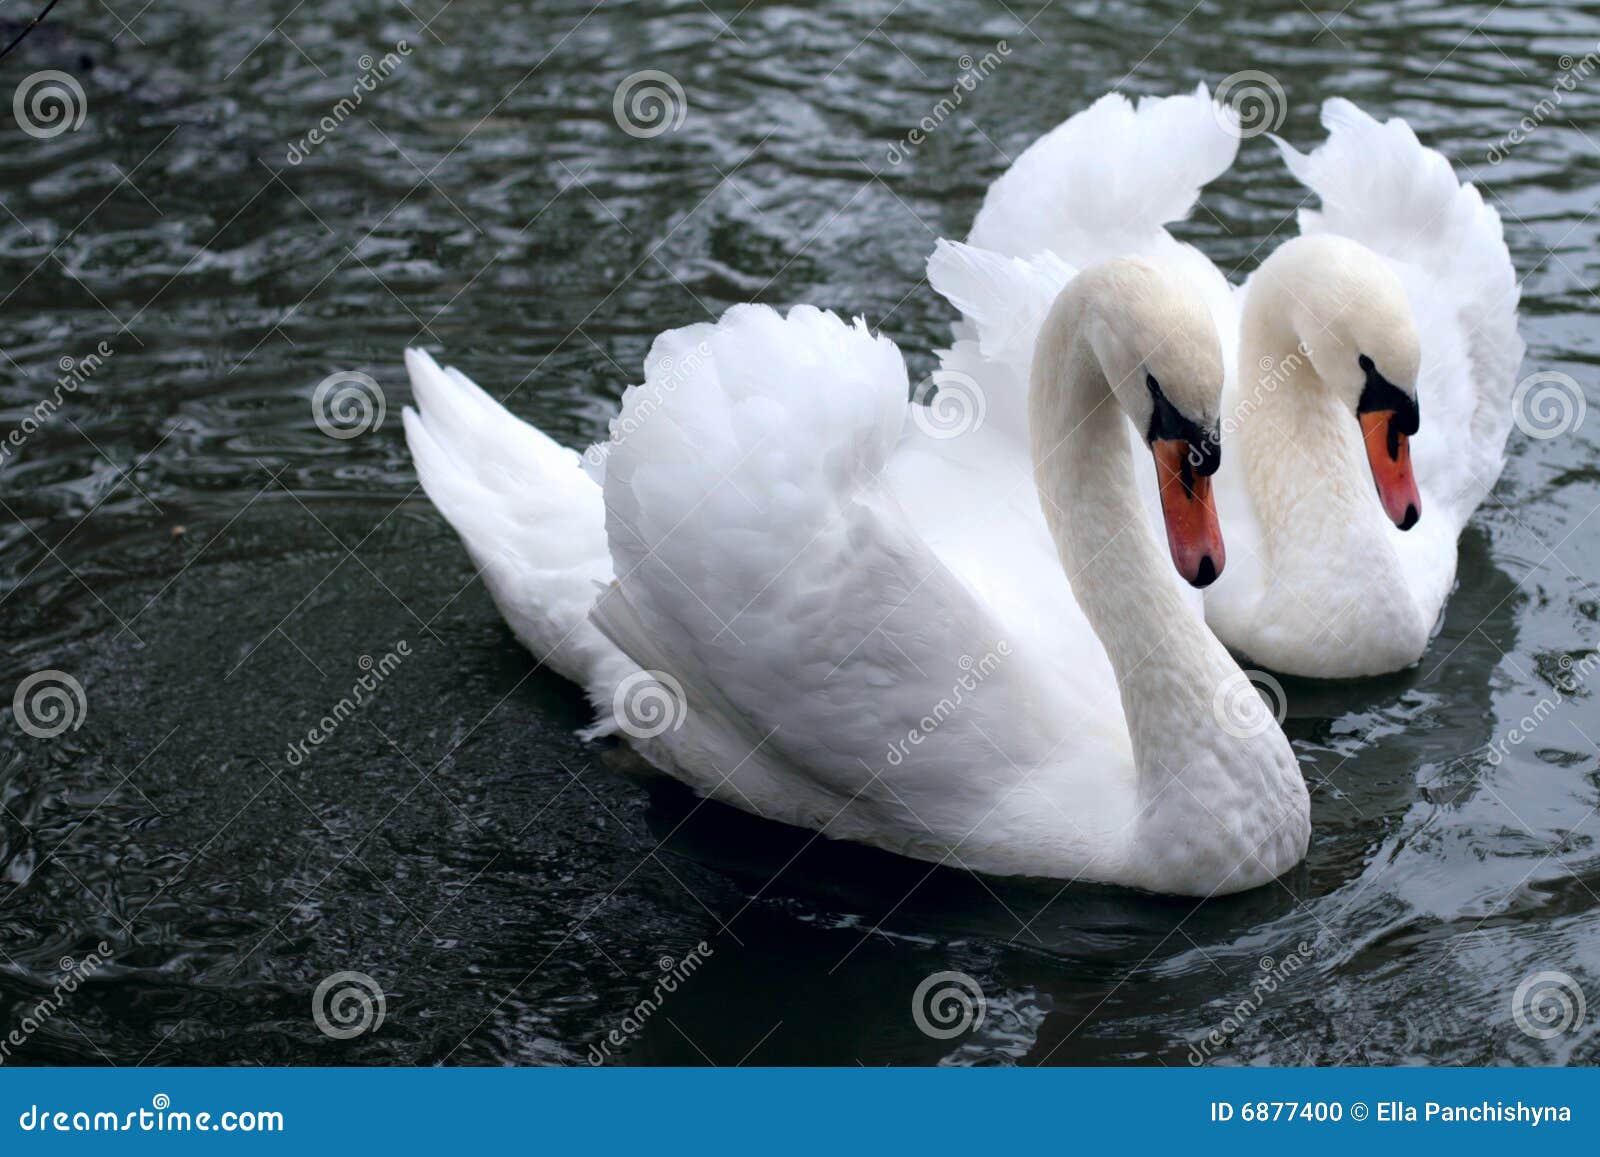 swan tenderness